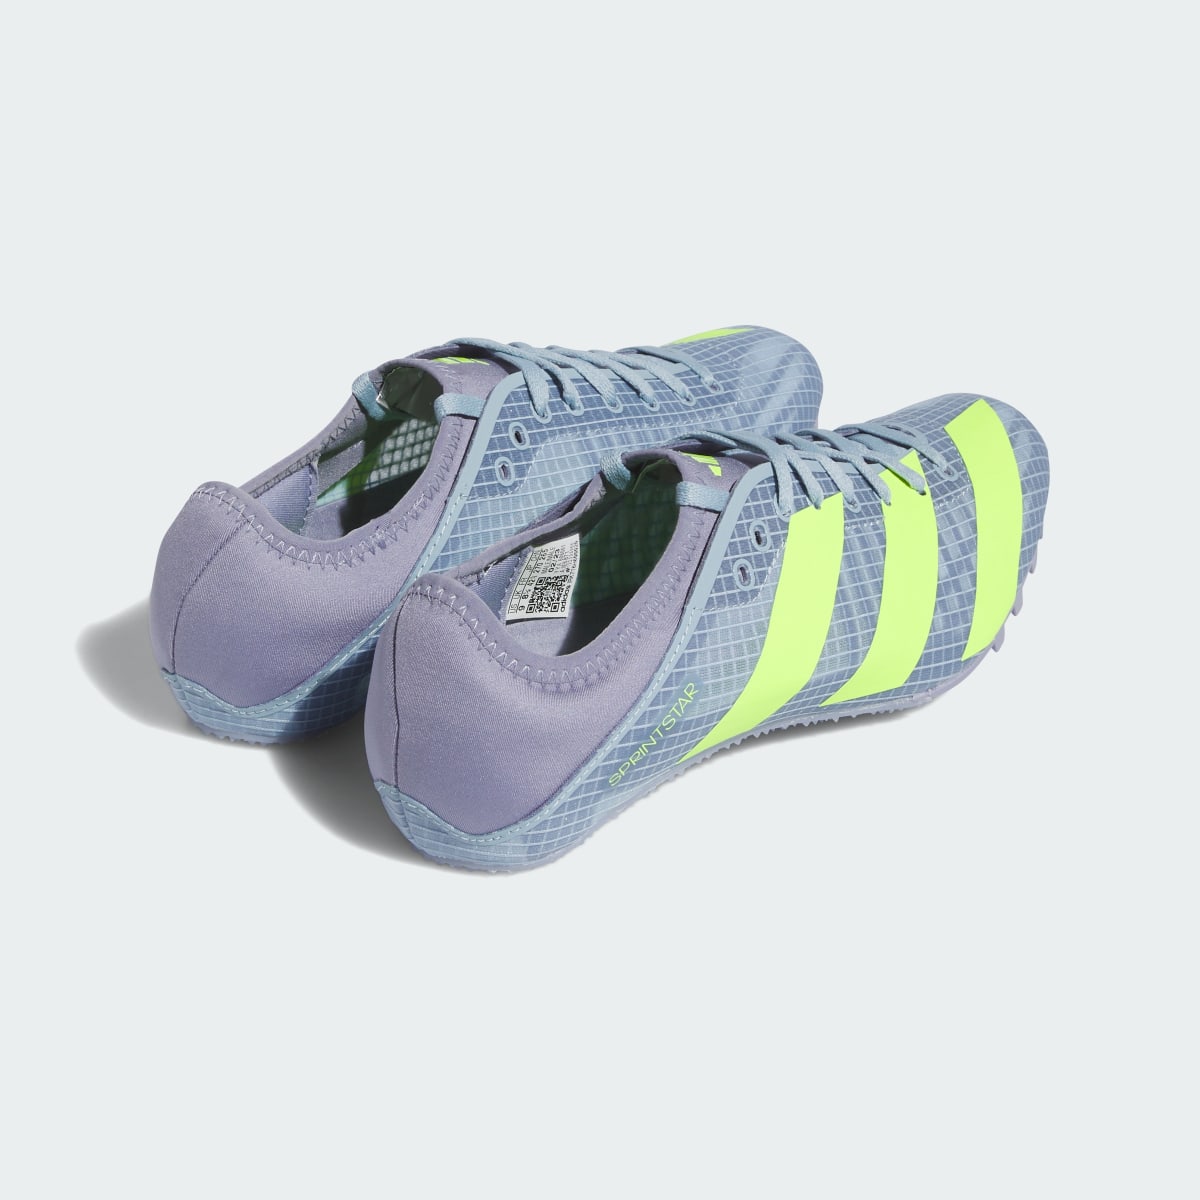 Adidas Sprintstar Spike-Schuh. 6